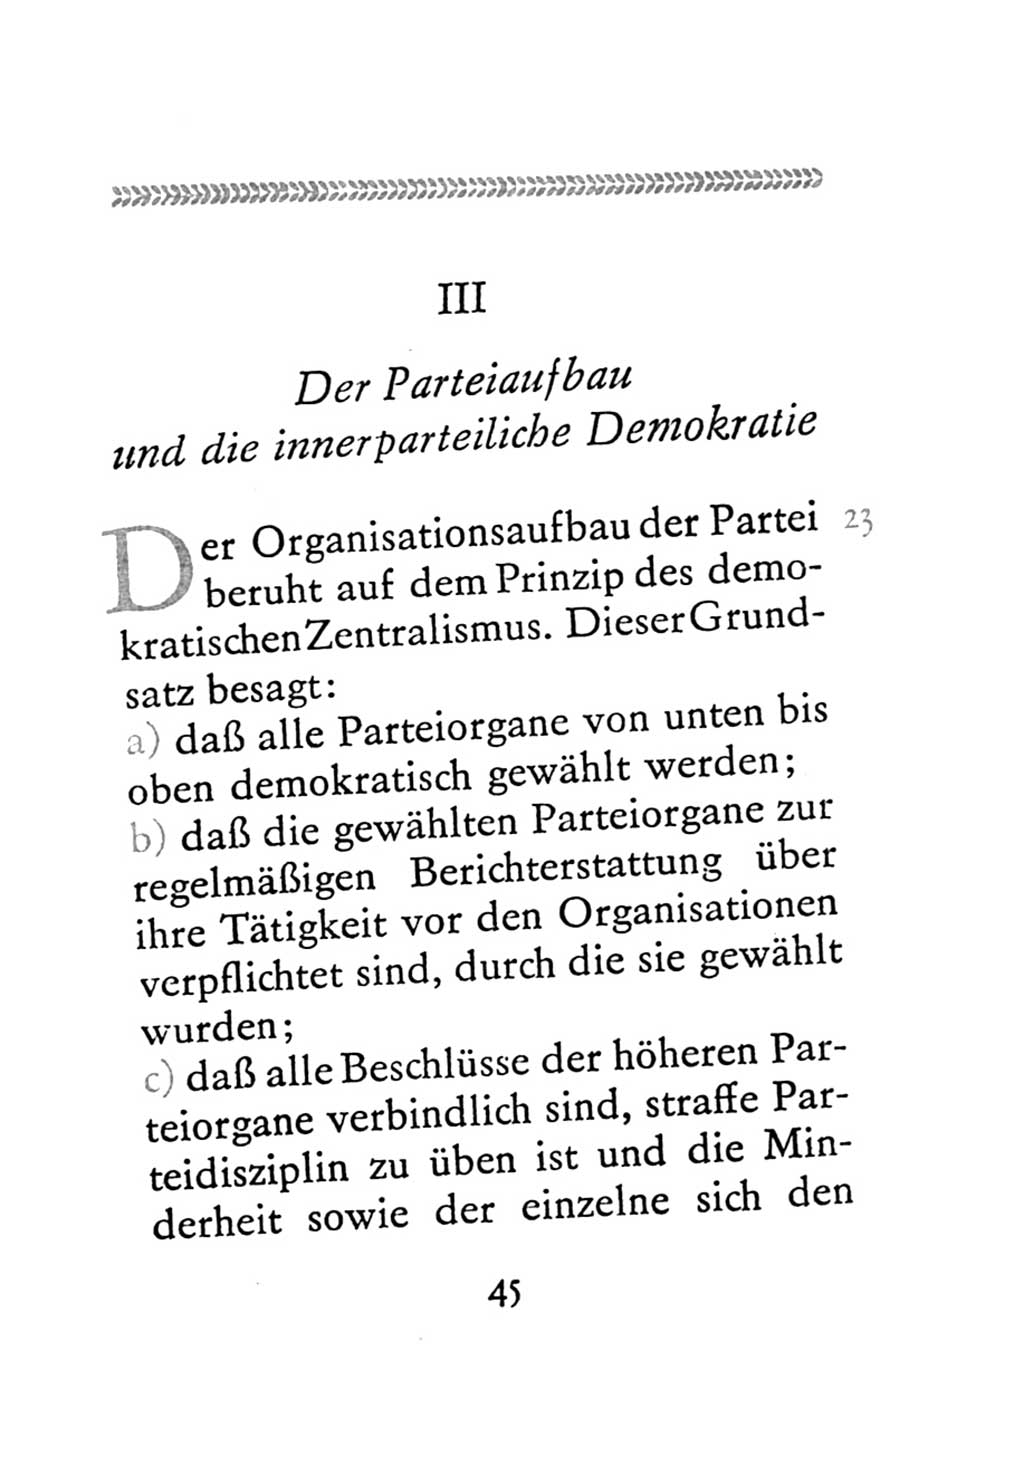 Statut der Sozialistischen Einheitspartei Deutschlands (SED) 1971, Seite 45 (St. SED DDR 1971, S. 45)